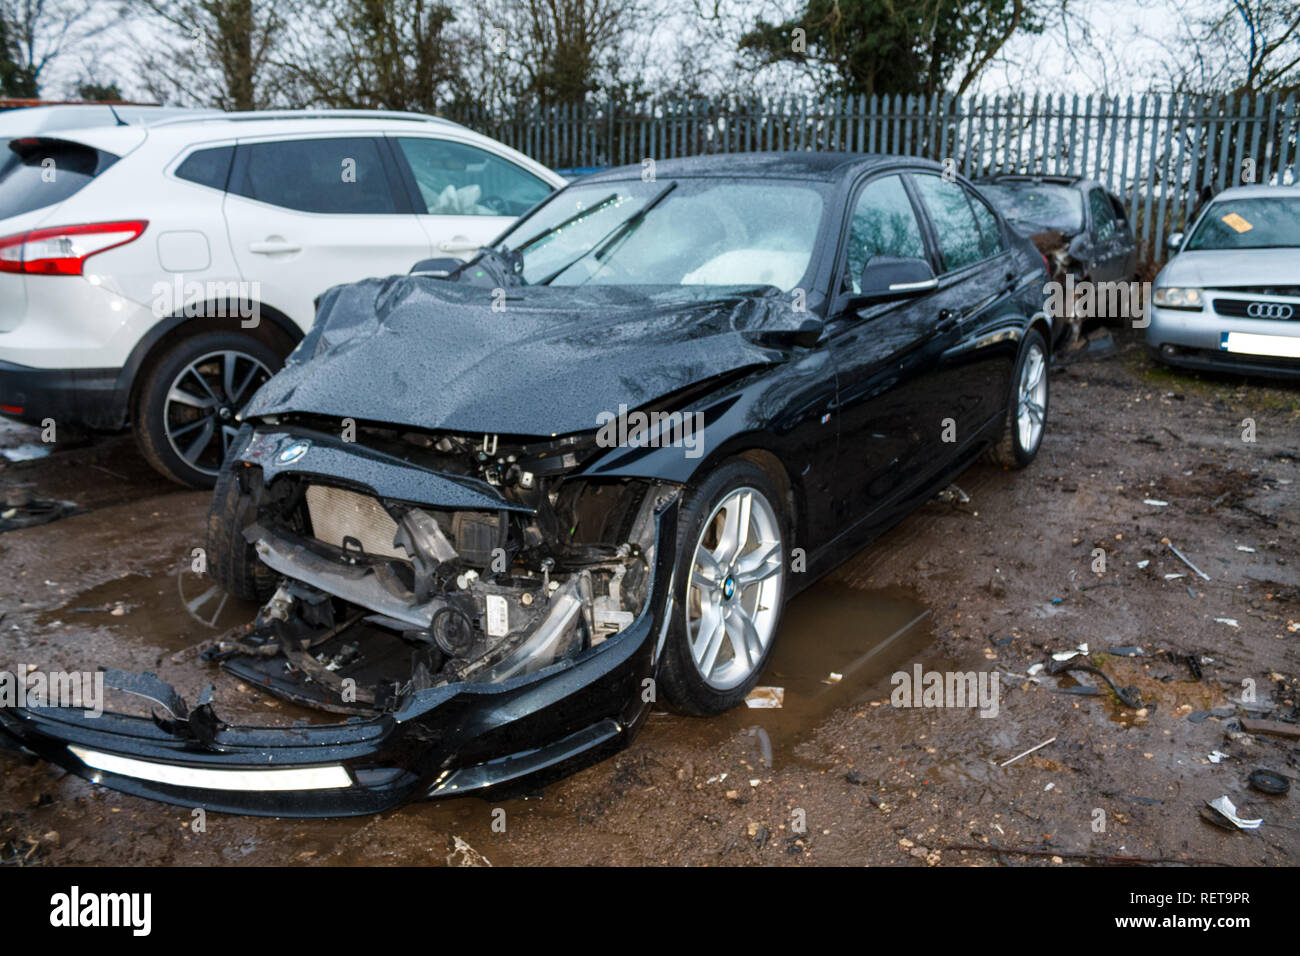 Car crash / vehicle damage; BMW head/side on crash damage. Stock Photo